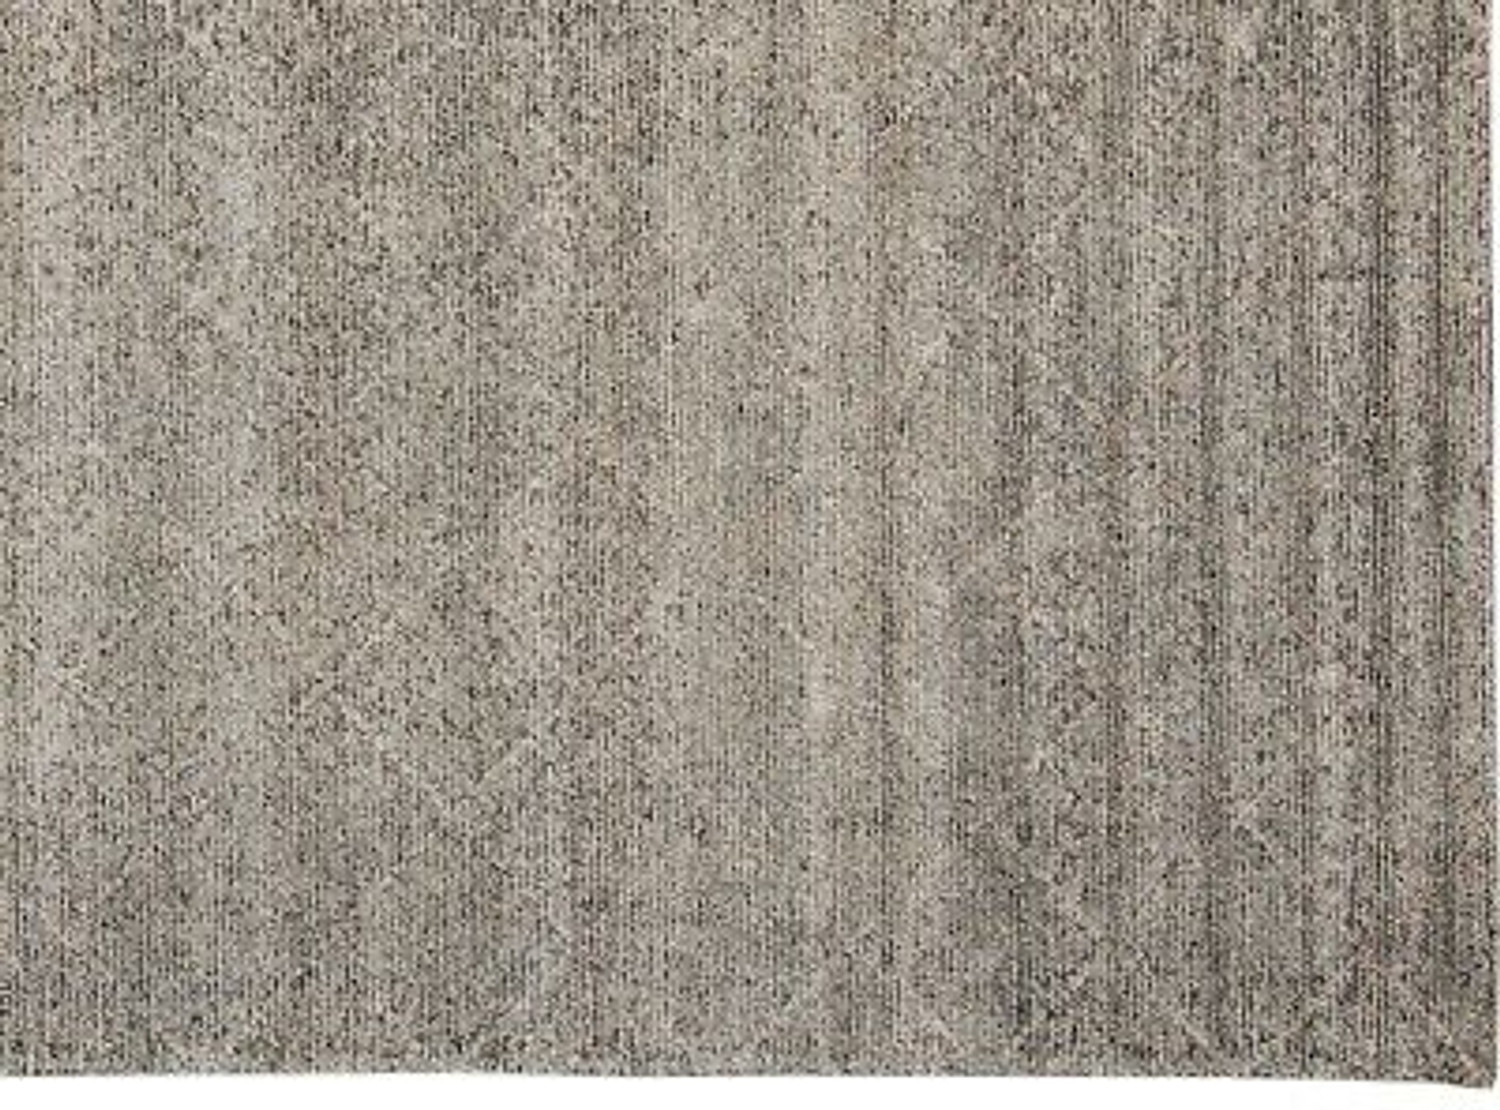 Fancy Handmade 7x10 Elegant Rug Contemporary Neutral Home Decor Carpet